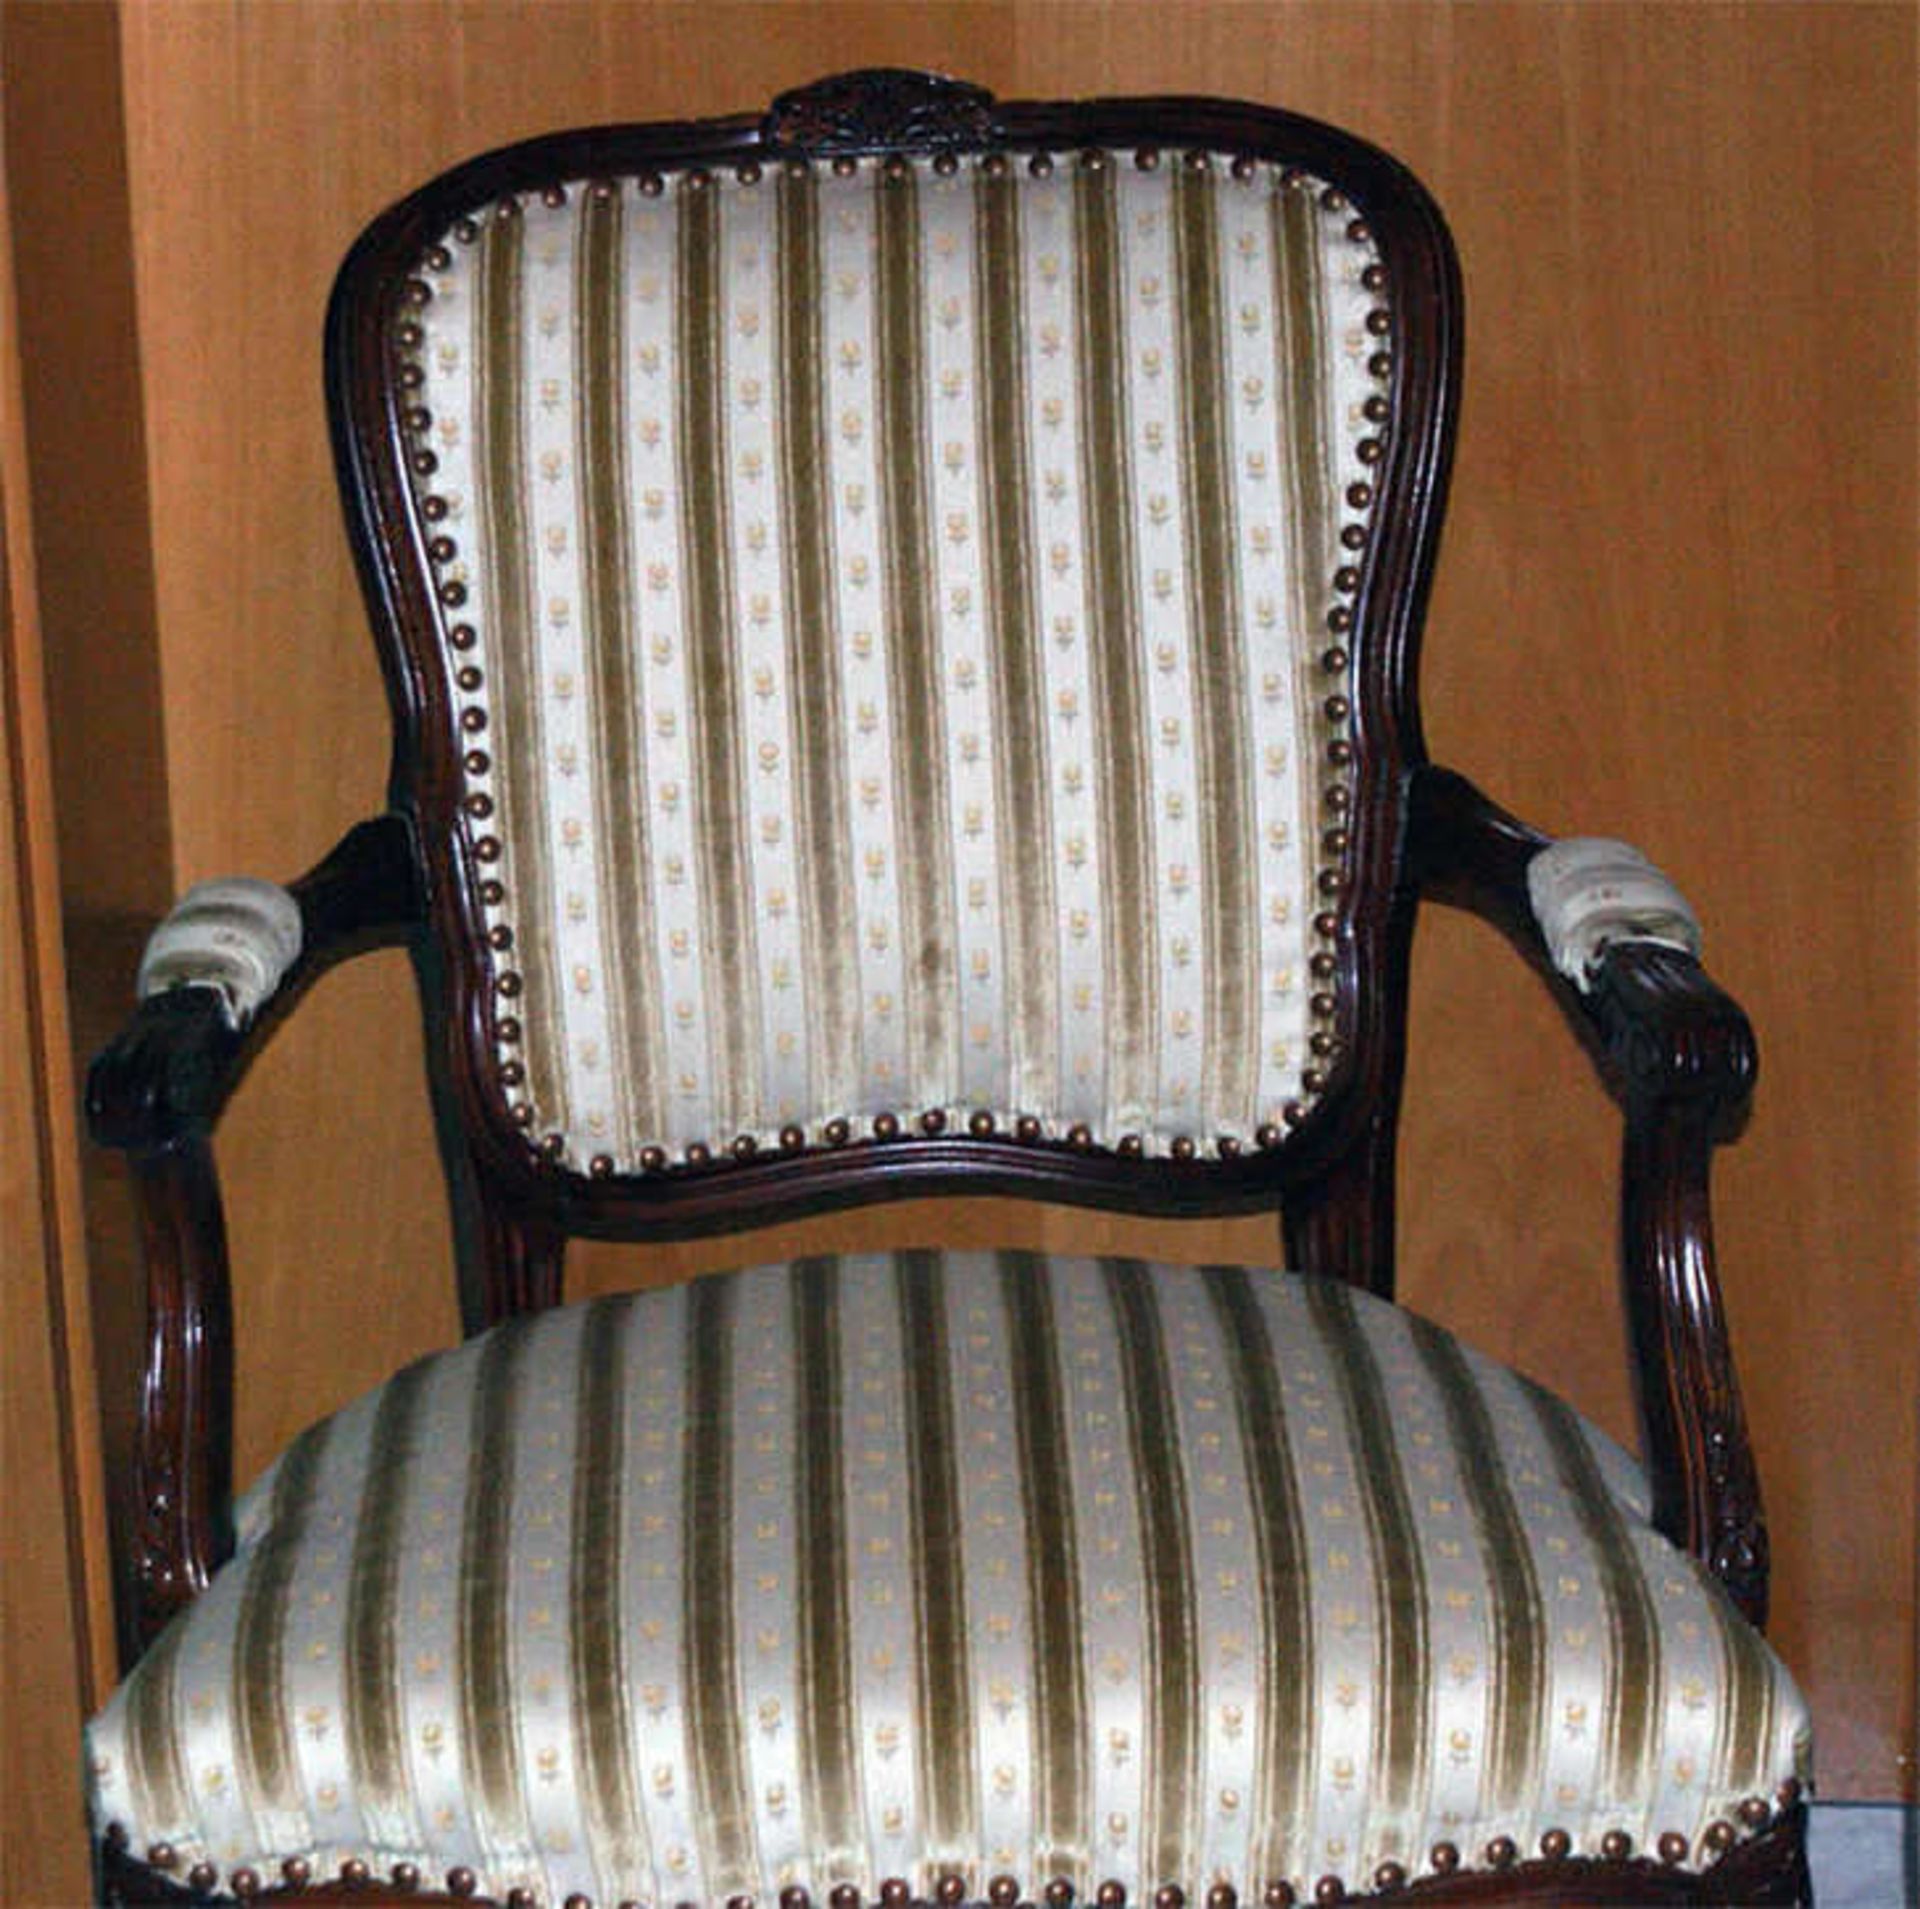 1 Armlehnen-Stuhl mit floralem Muster, guter Zustand.